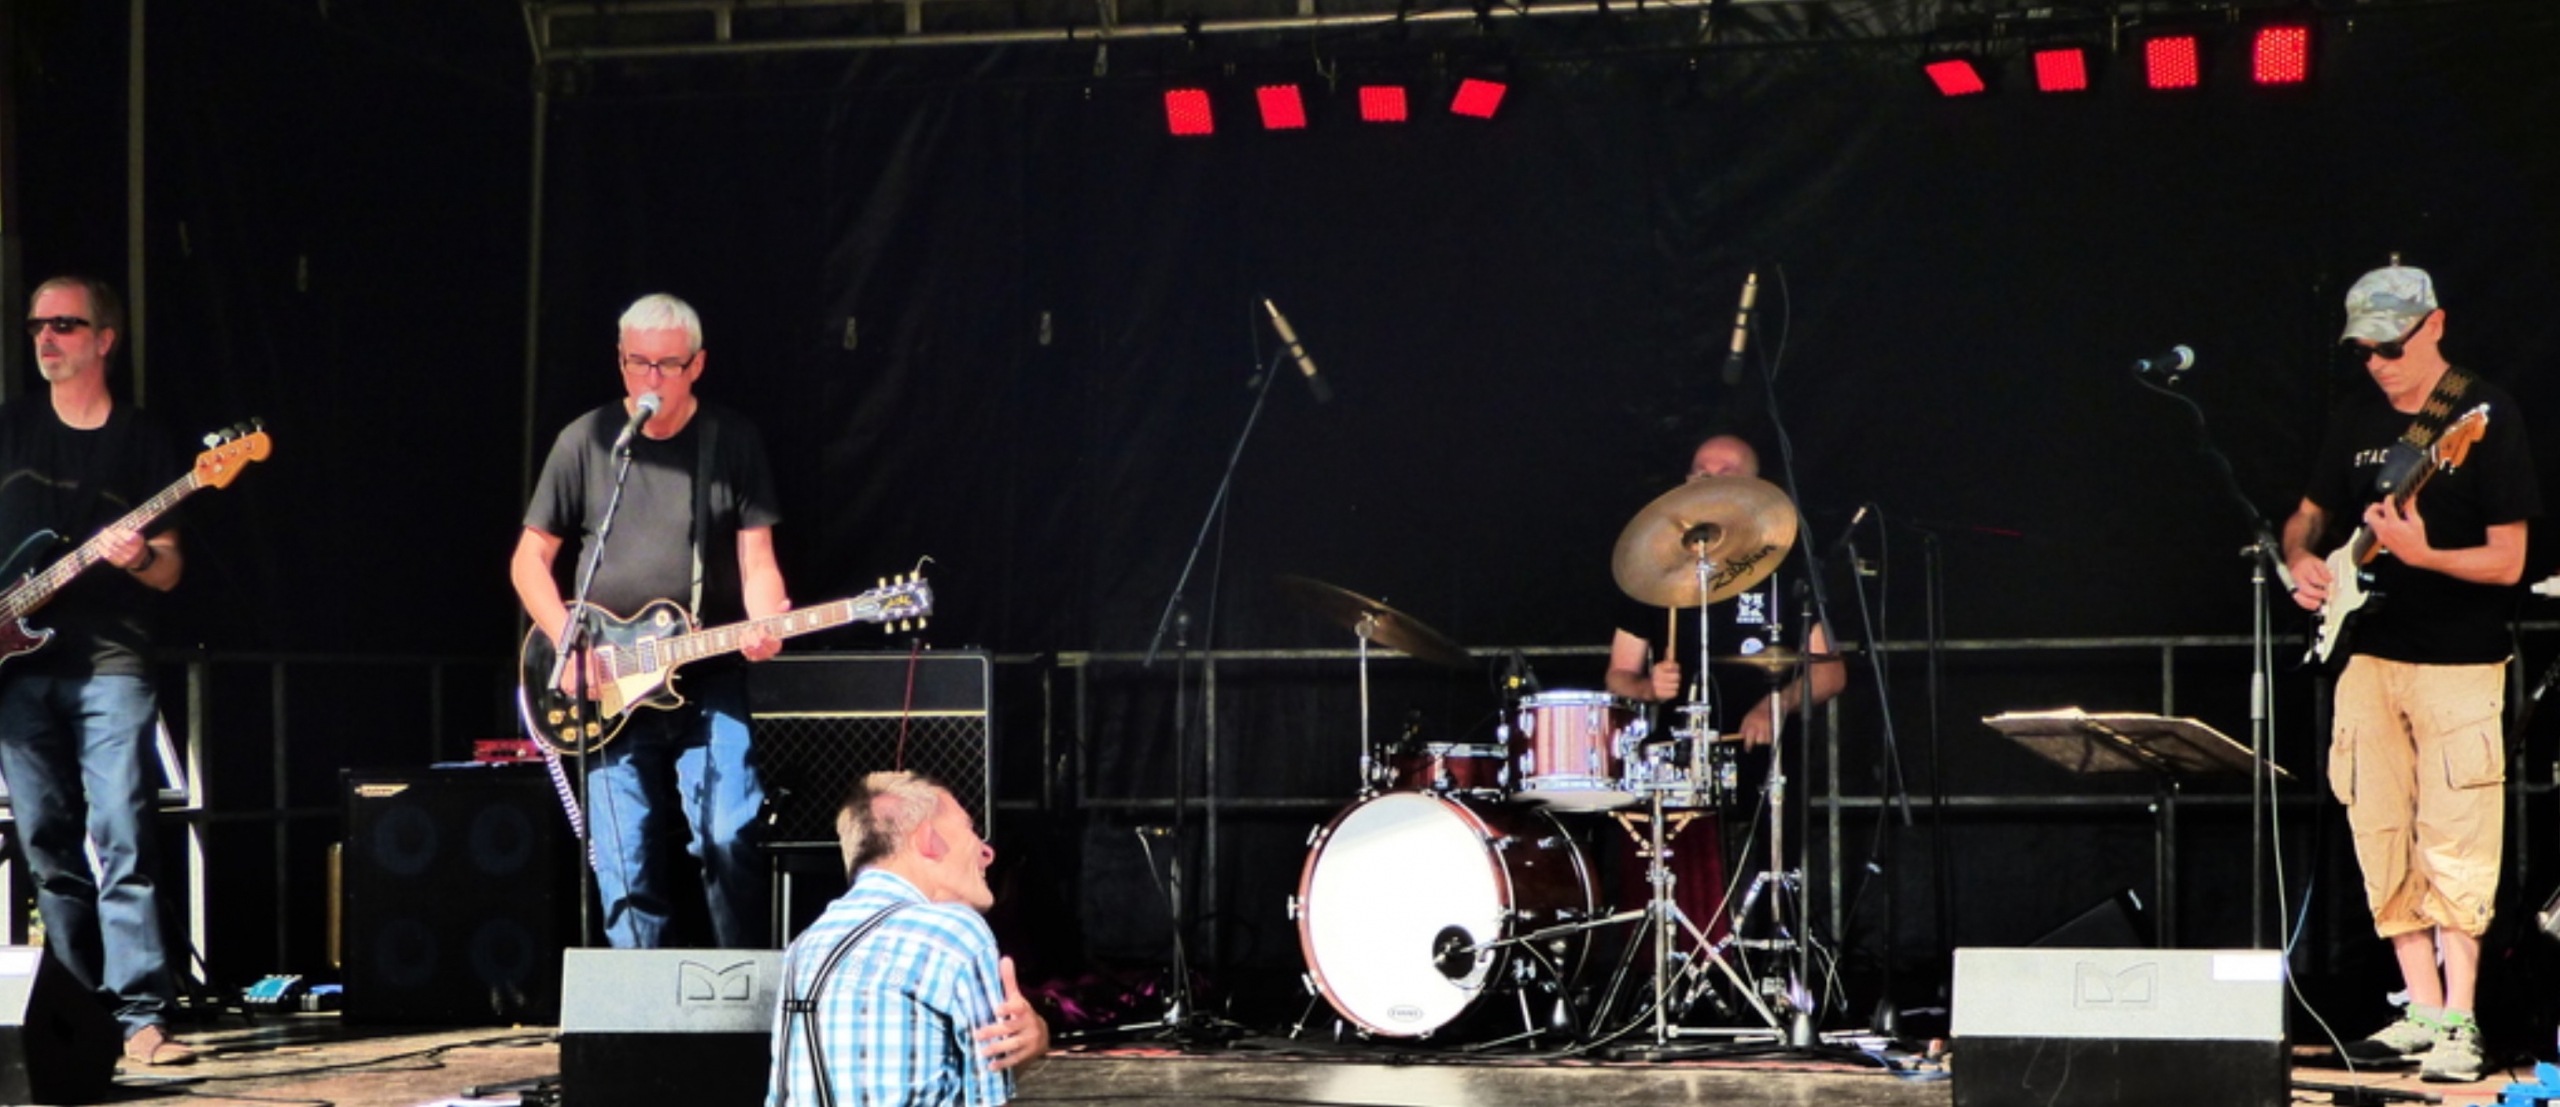 Die Band Supergroup Vol. 4 live auf der Bühne beim Open Air "Roll Over Bellhofen" in Großbellhofen am 14.09.2019.